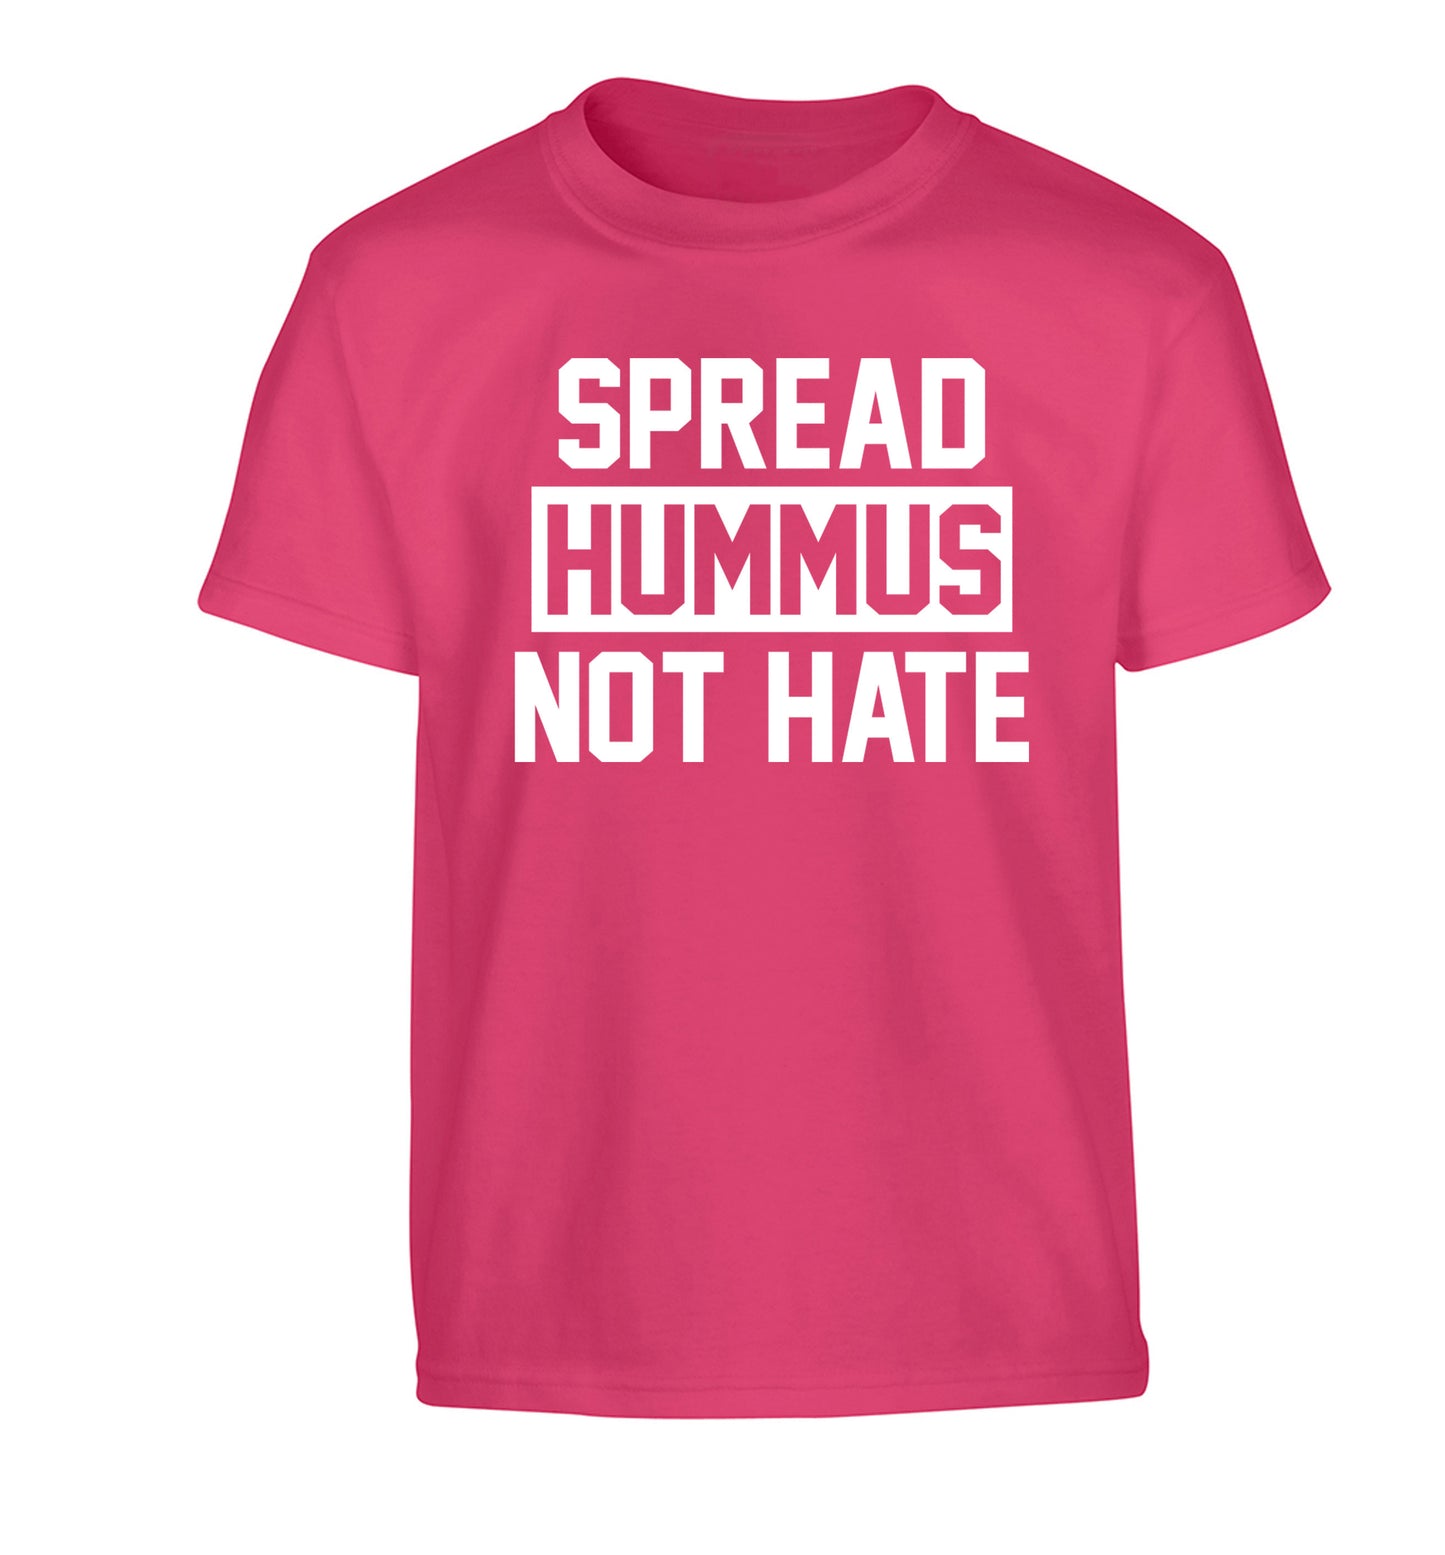 Spread hummus not hate Children's pink Tshirt 12-14 Years